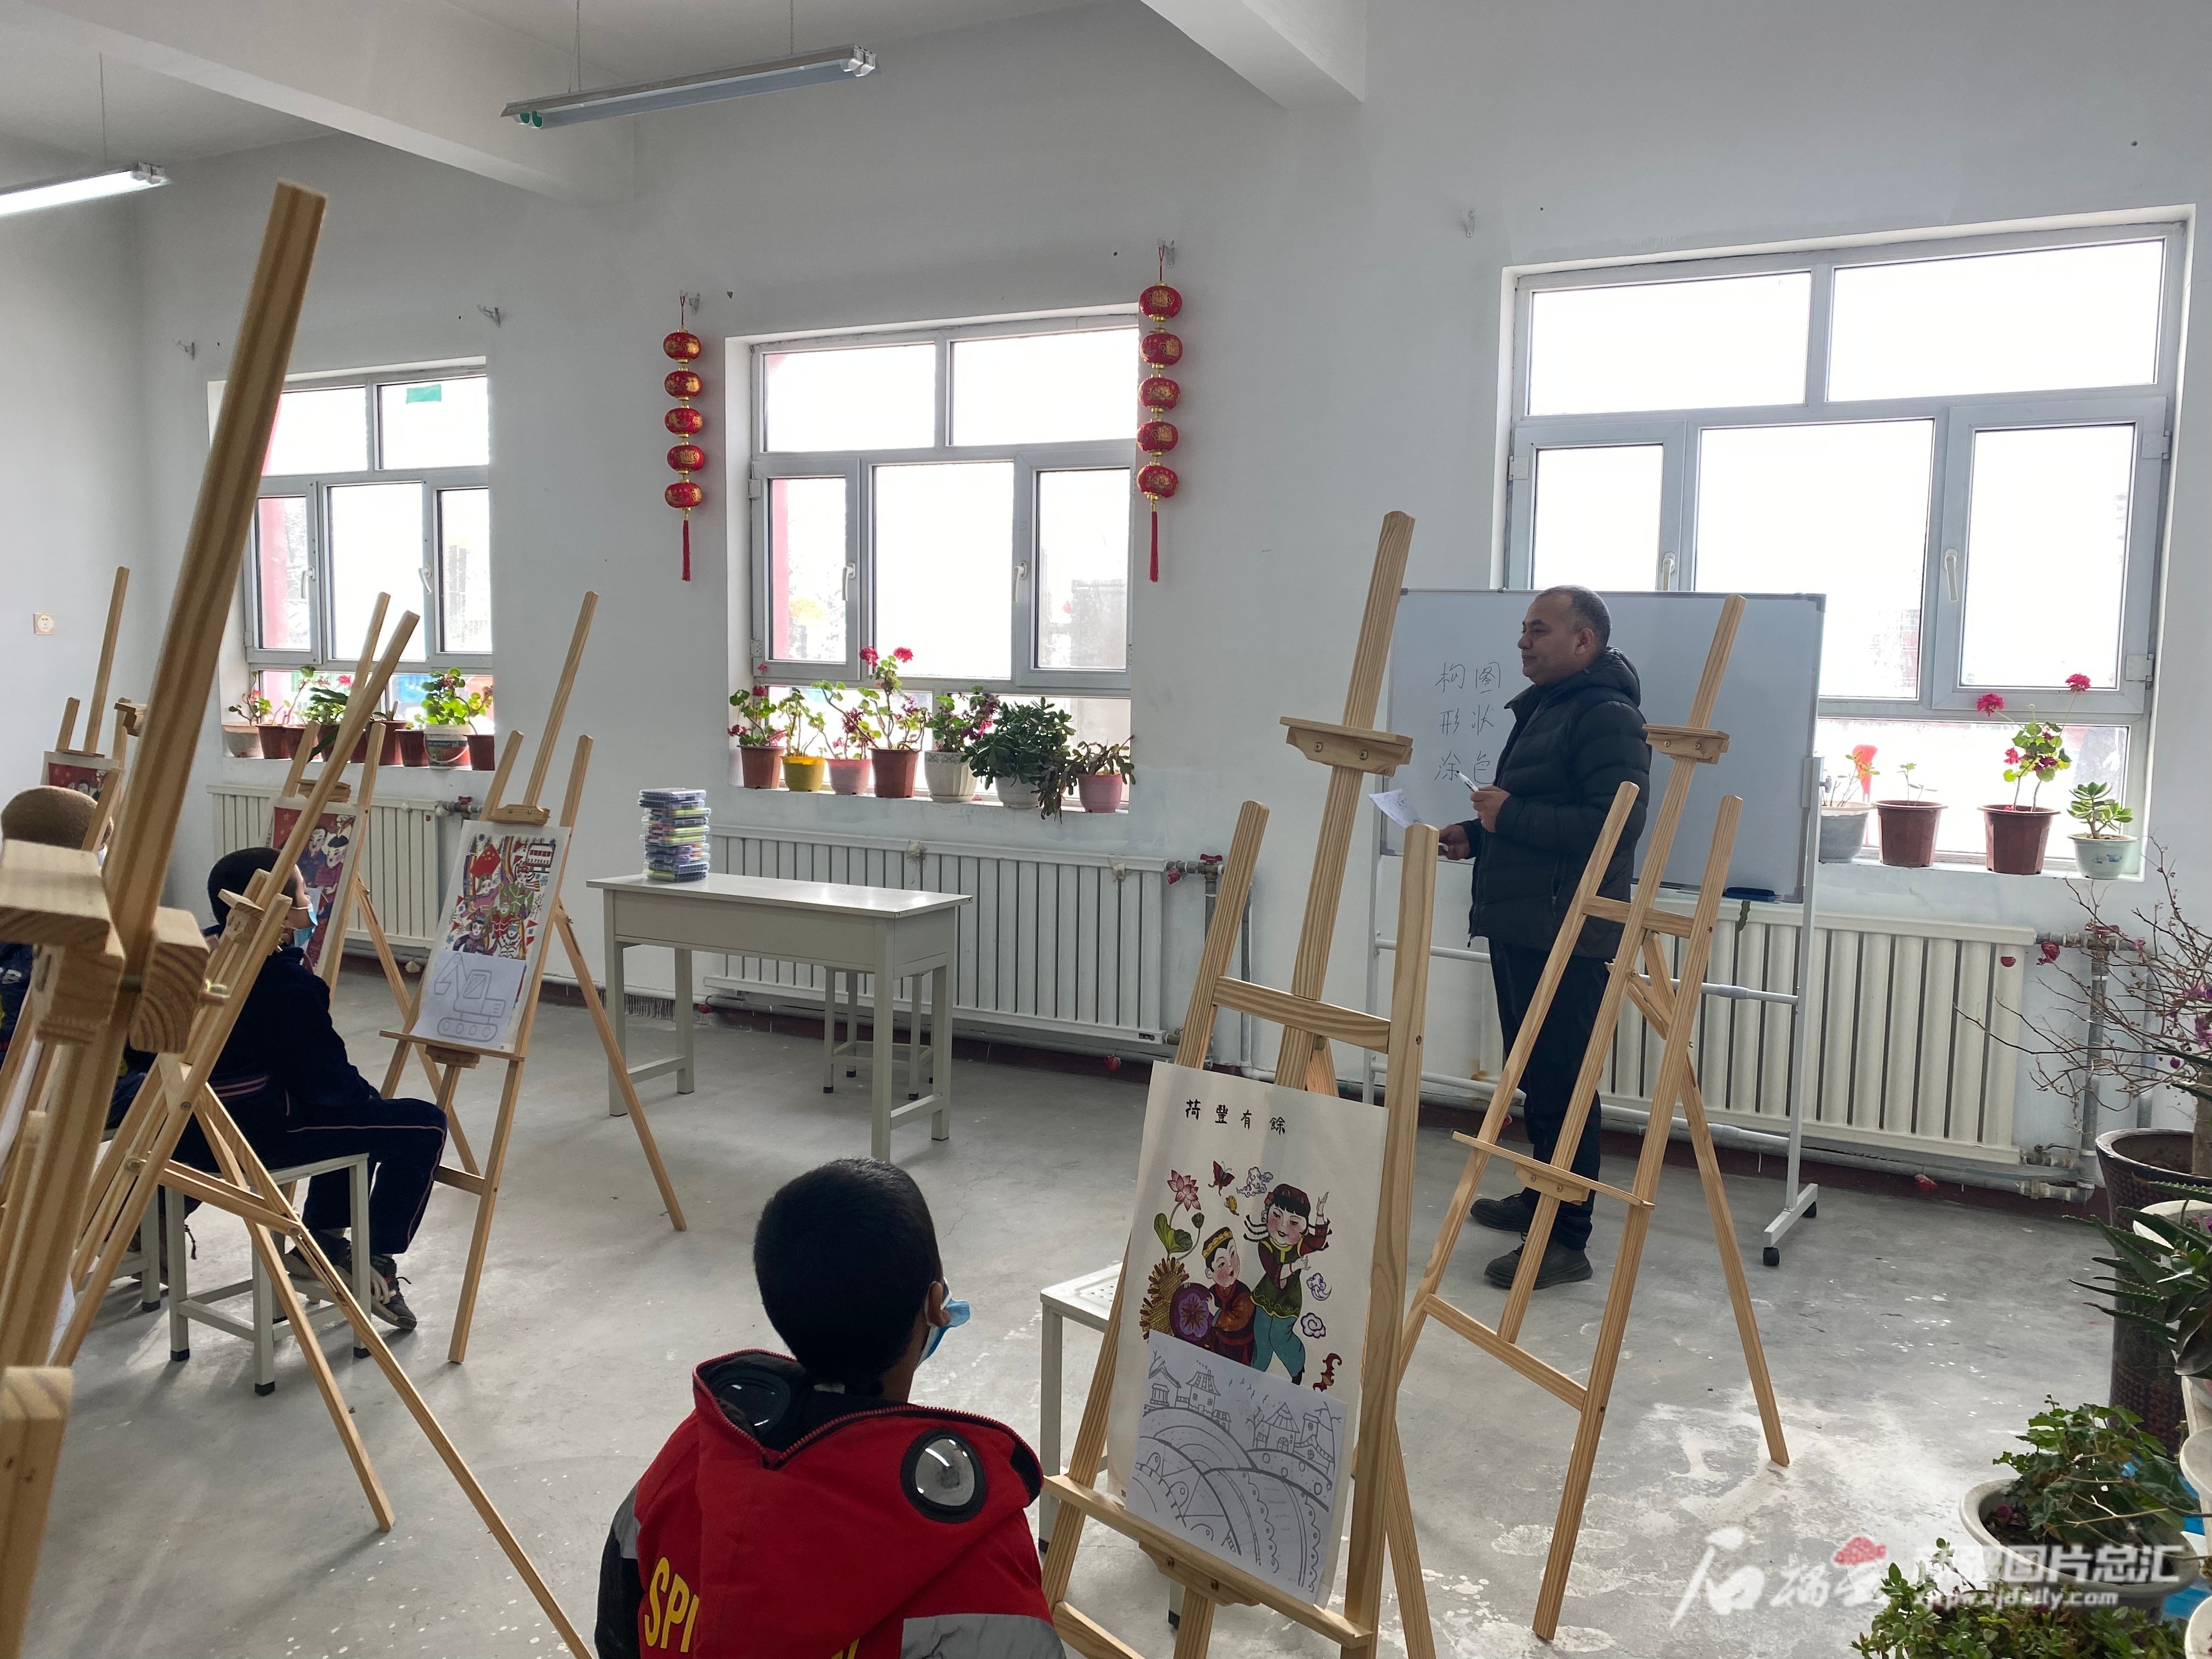 新疆文化艺术学校的老师给孩子们教授色彩运用。田涛摄